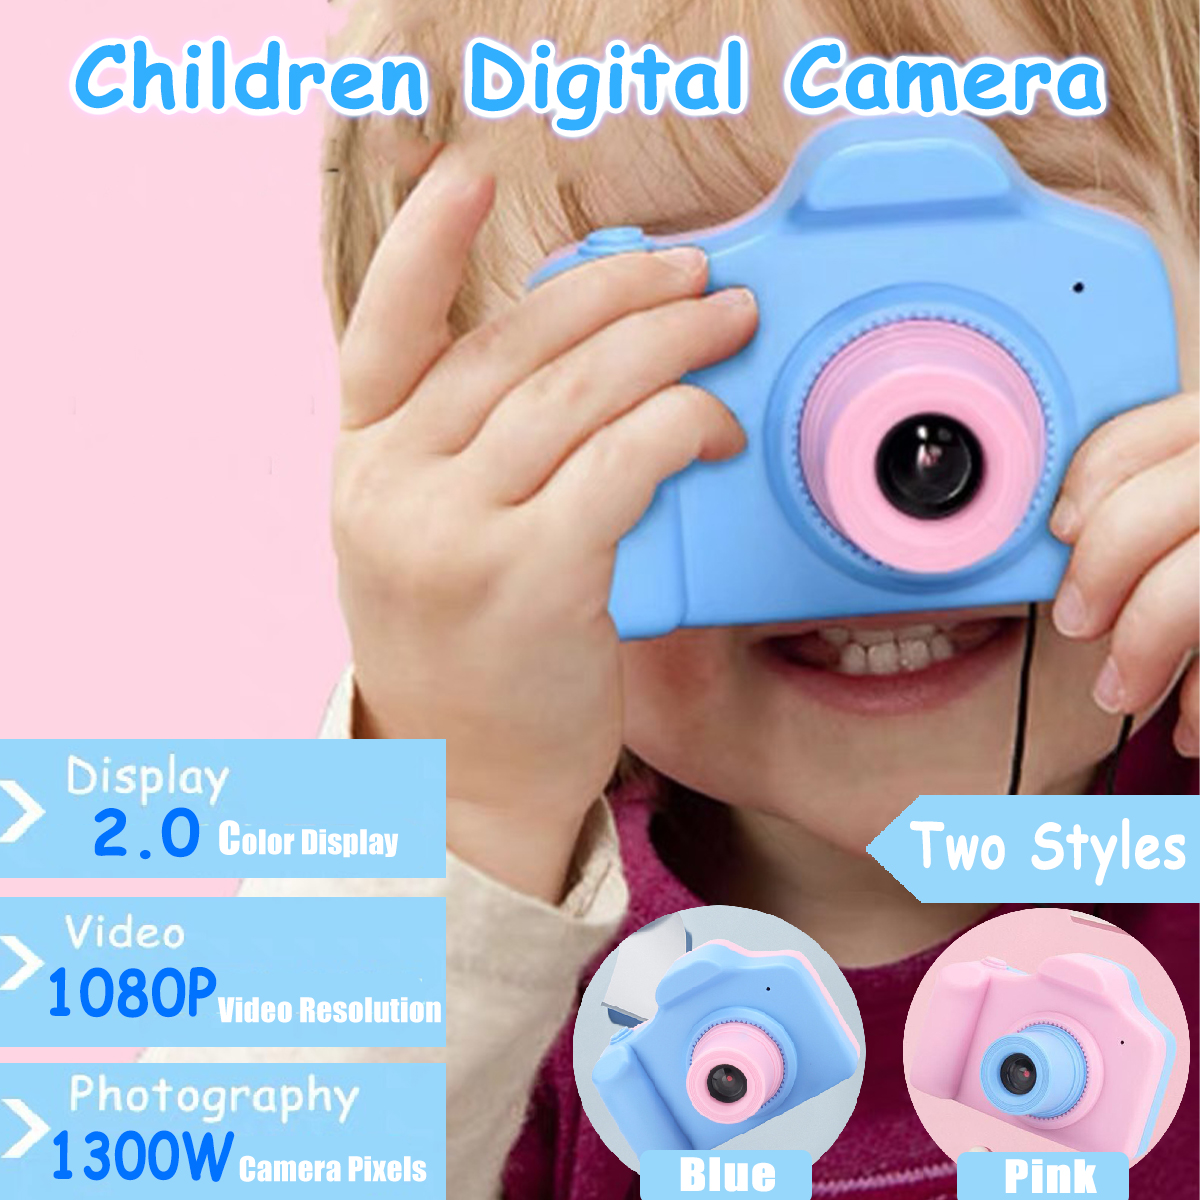 1300W Pixels 1080P Mini Digital Camera 2.0 Inch LCD Screen Support 32GB SD Card